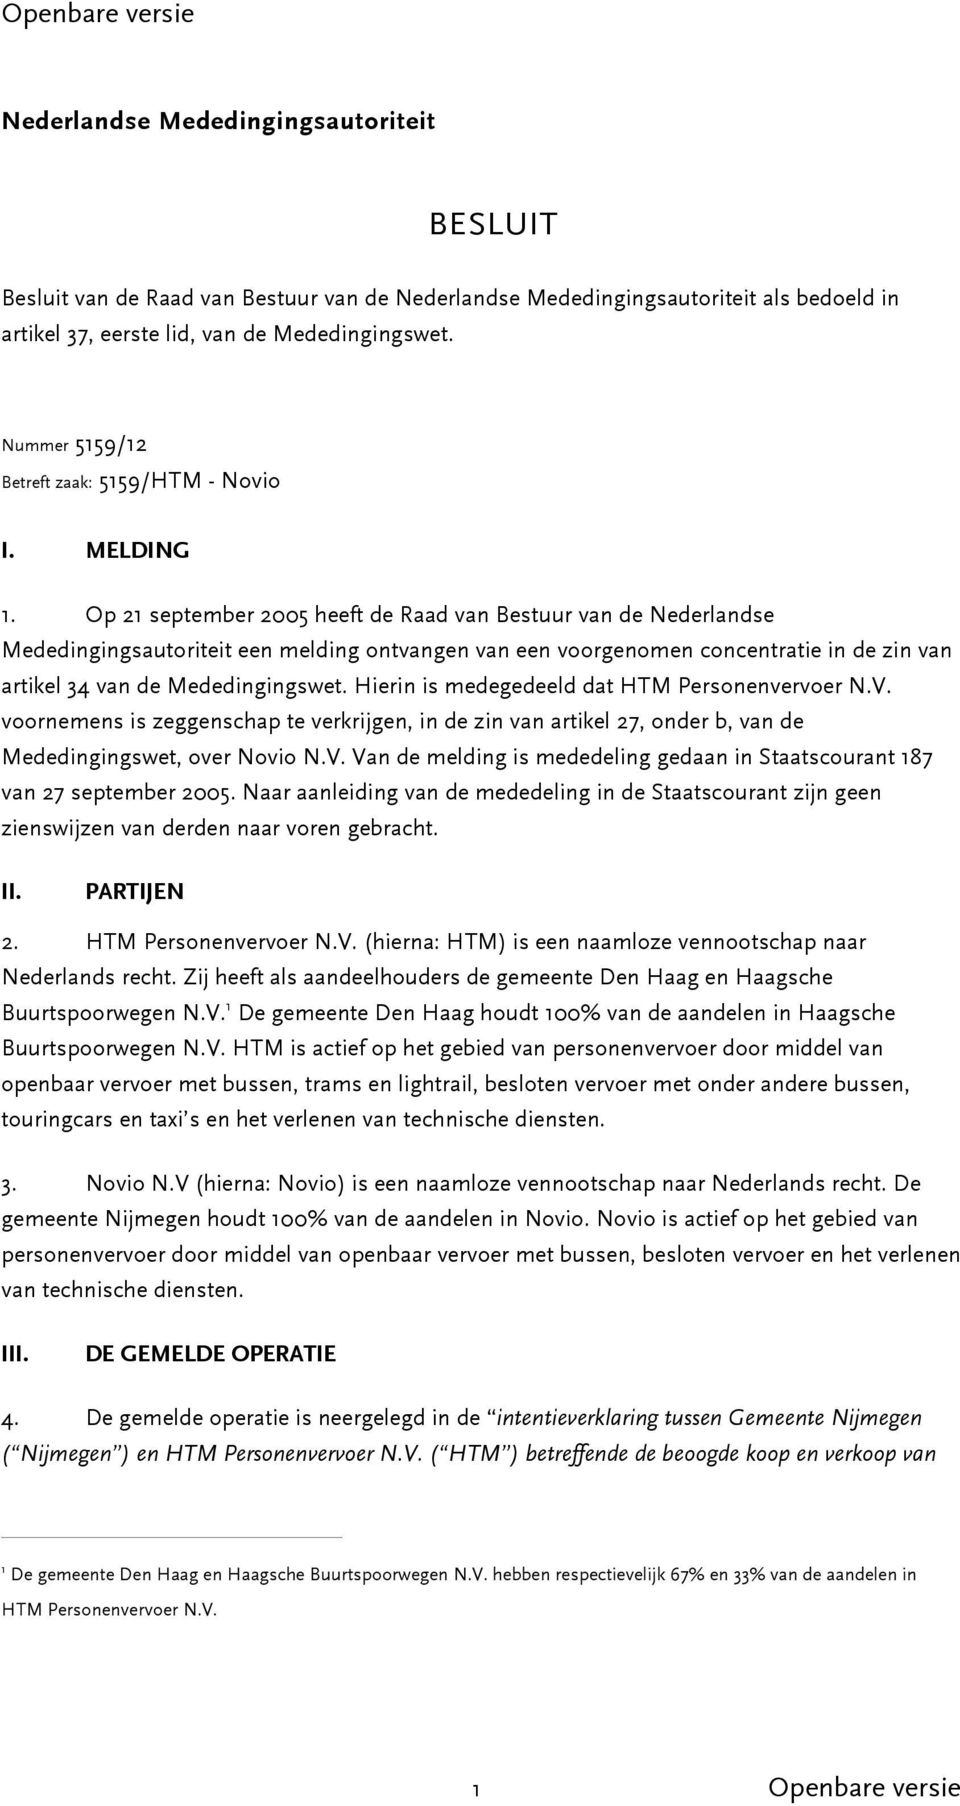 Op 21 september 2005 heeft de Raad van Bestuur van de Nederlandse Mededingingsautoriteit een melding ontvangen van een voorgenomen concentratie in de zin van artikel 34 van de Mededingingswet.